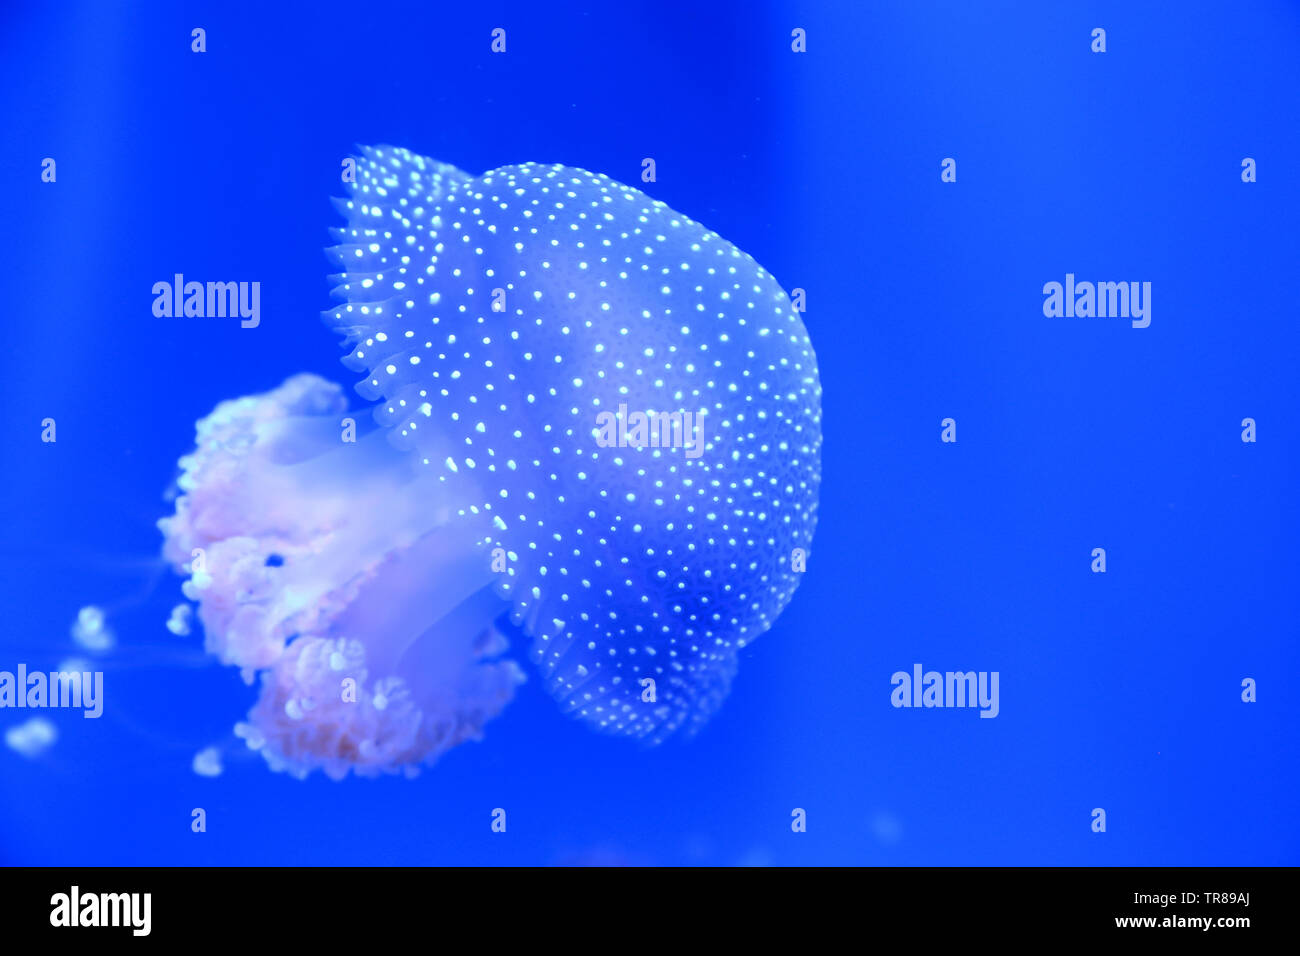 White-spotted meduse nuotare intorno come una campana galleggiante come è noto anche come. Foto Stock